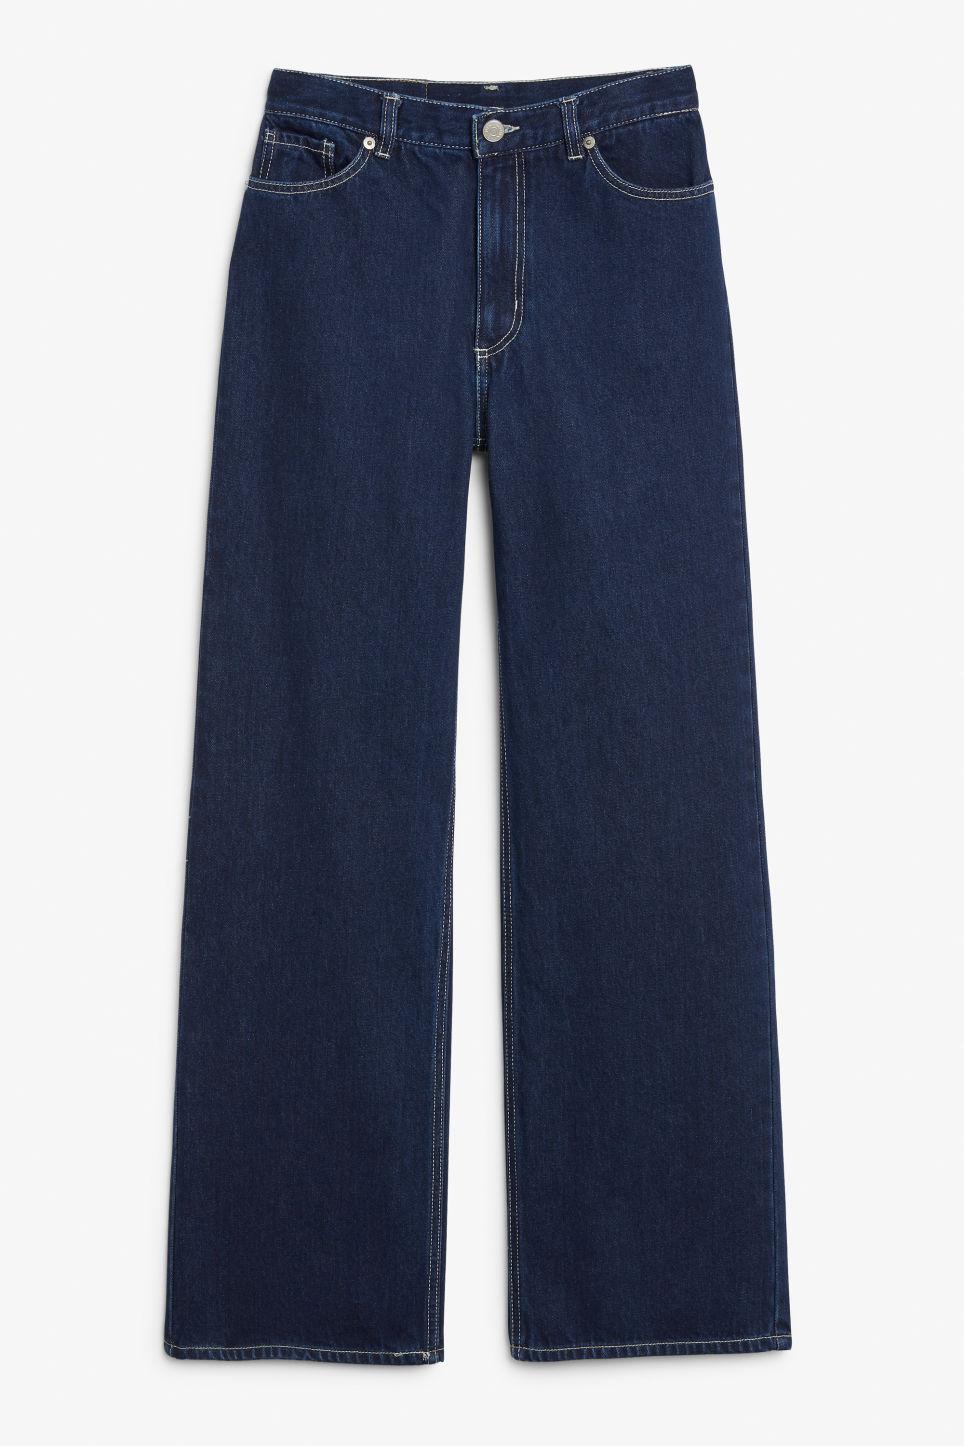 Monki Denim Yoko Dark Blue Jeans - Lyst